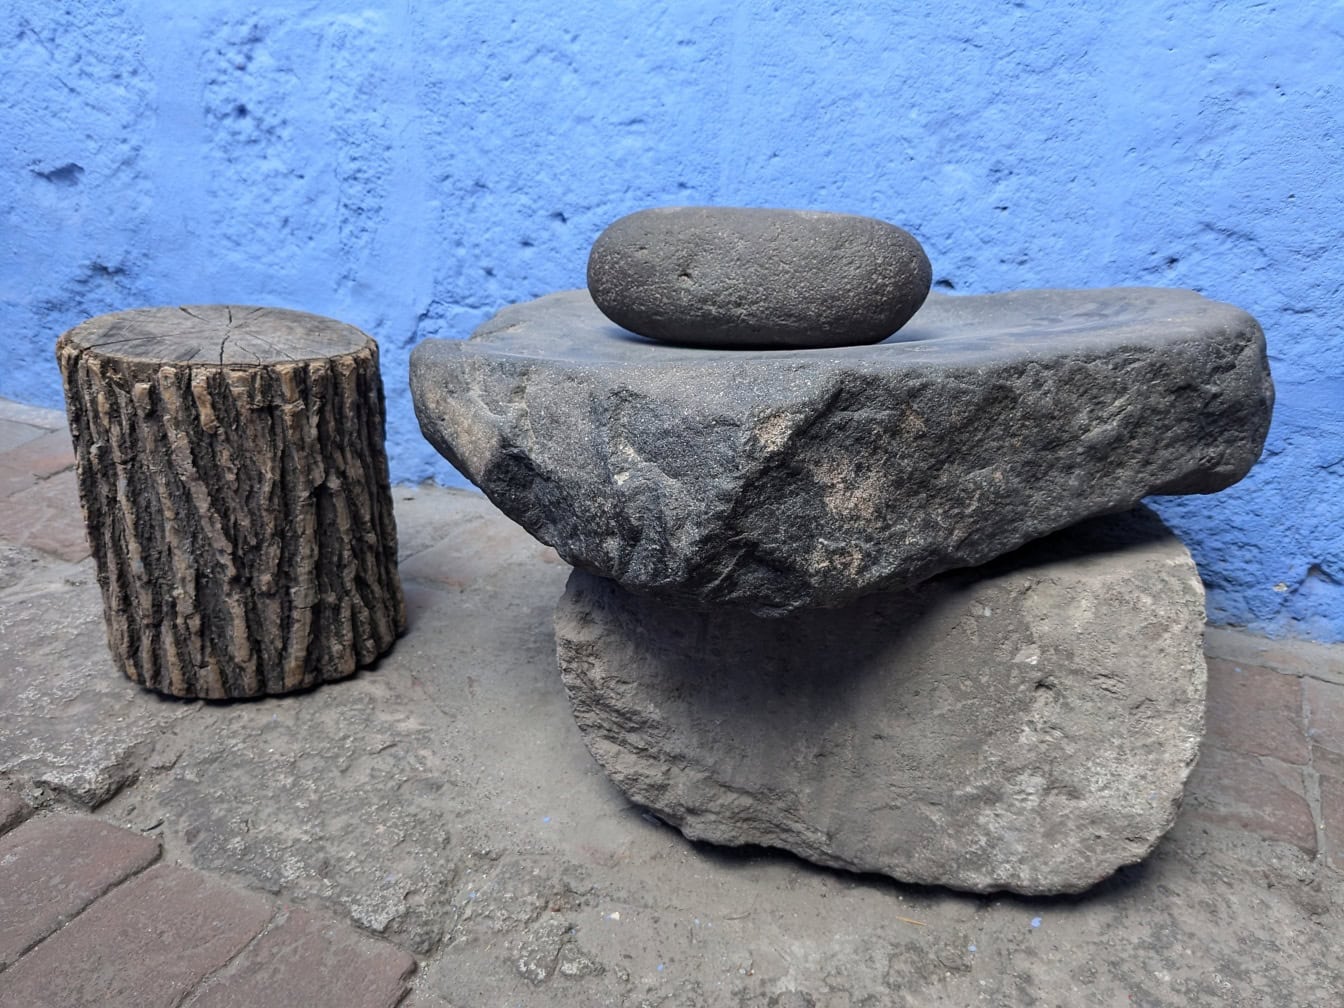 페루의 산타 카탈리나 수녀원에서 음식을 갈기 위해 방앗간으로 사용되는 주방 용품으로 사용되는 돌